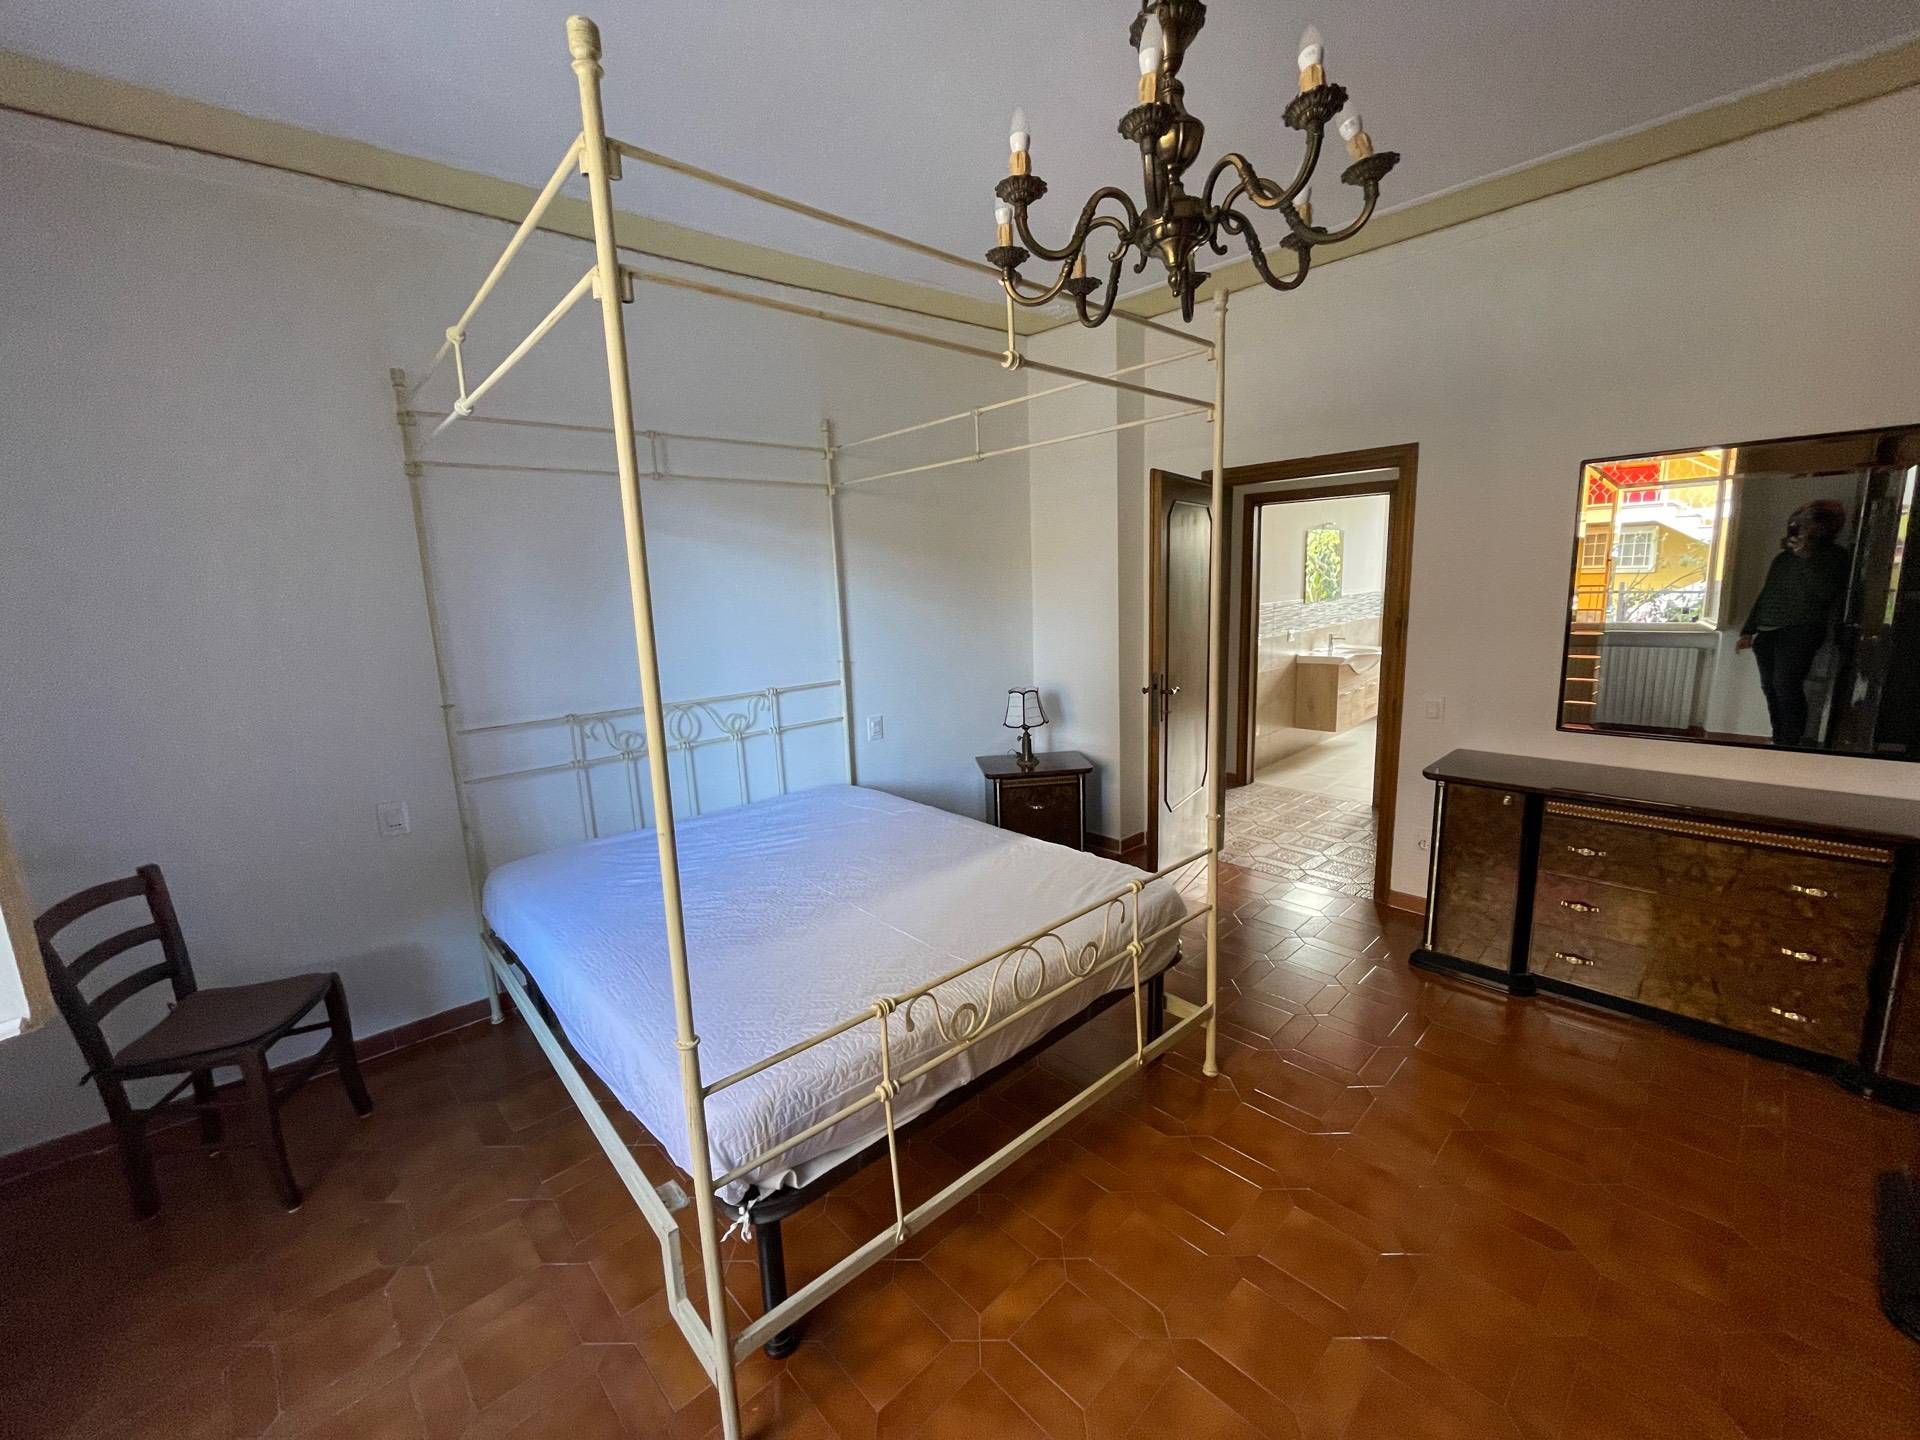 Appartamento arredato in affitto, Pisa barbaricina